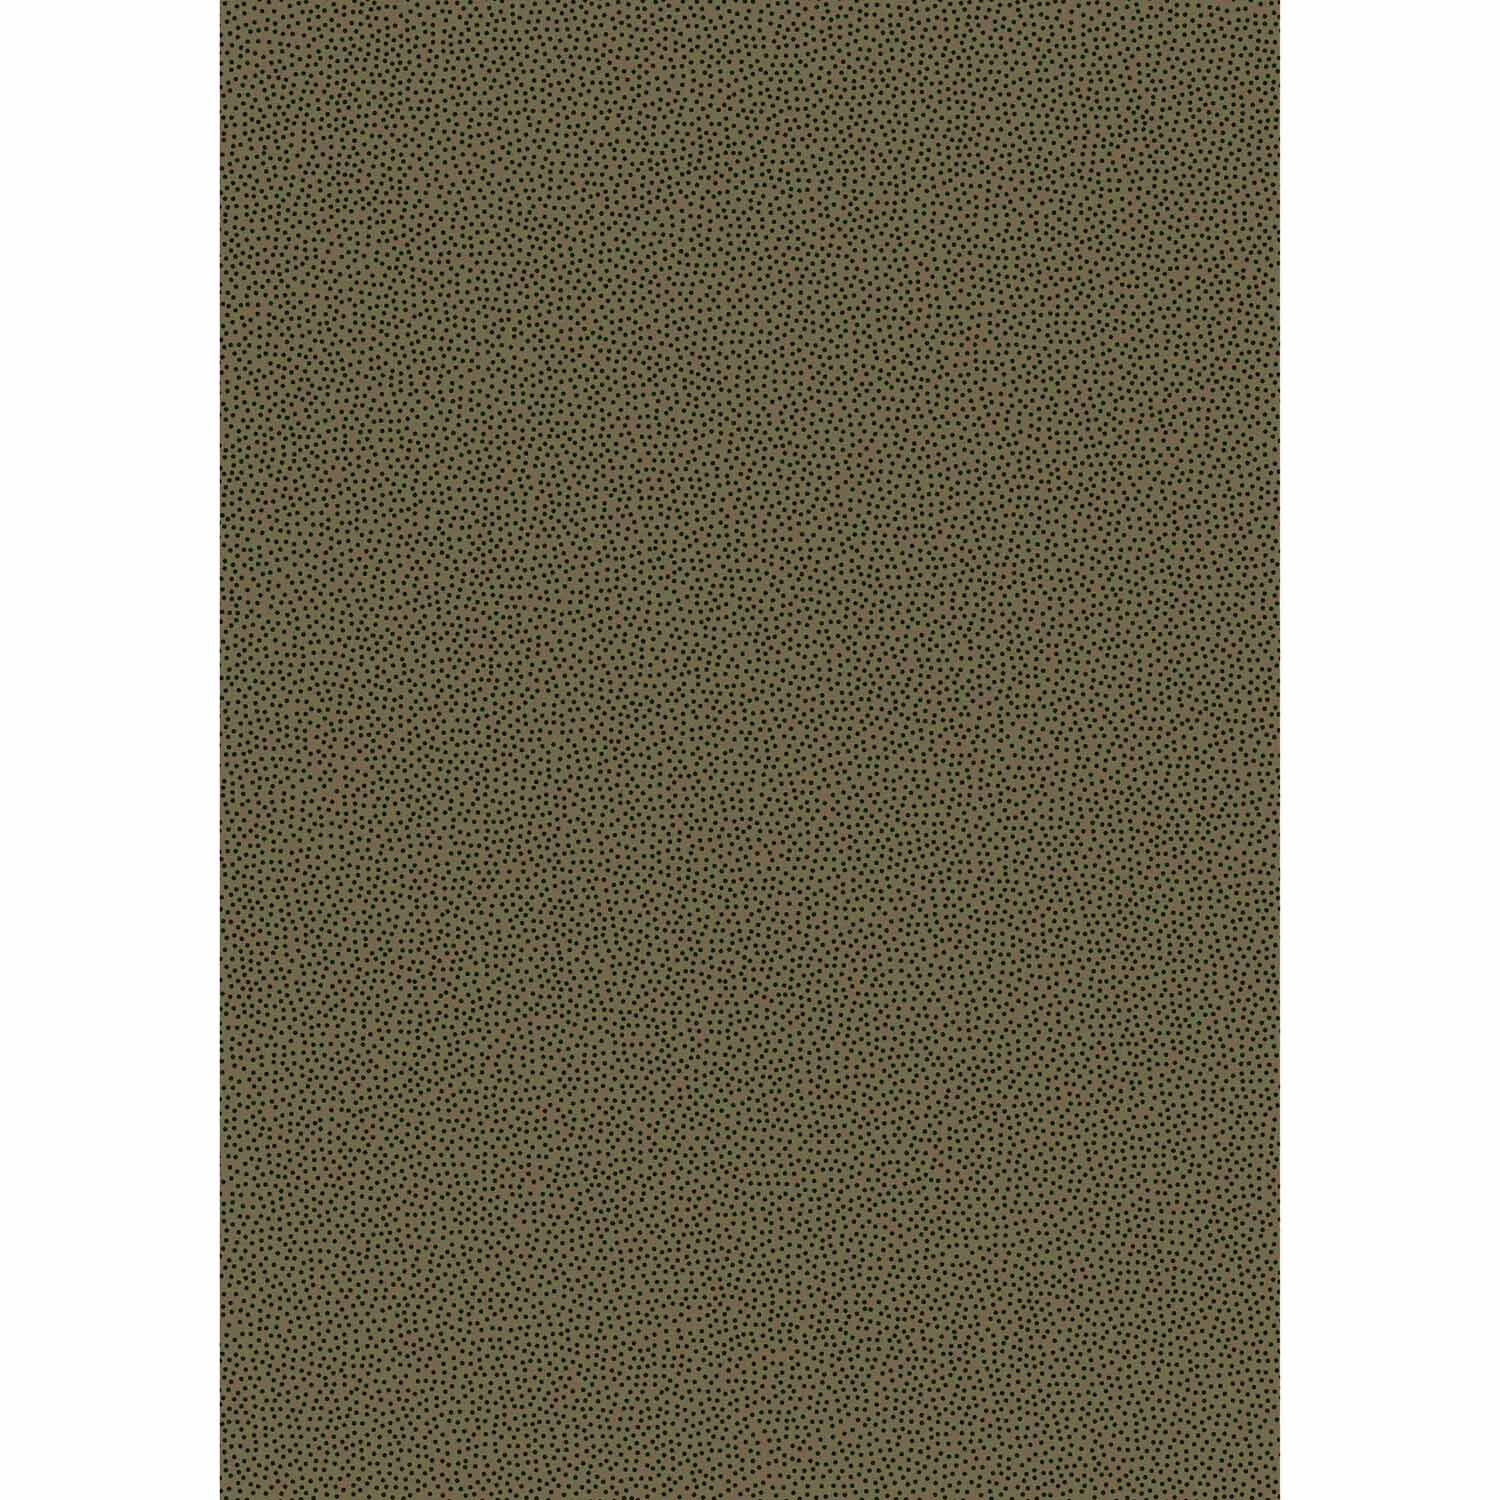 Transparentpapier Pünktchen grün 50x60cm